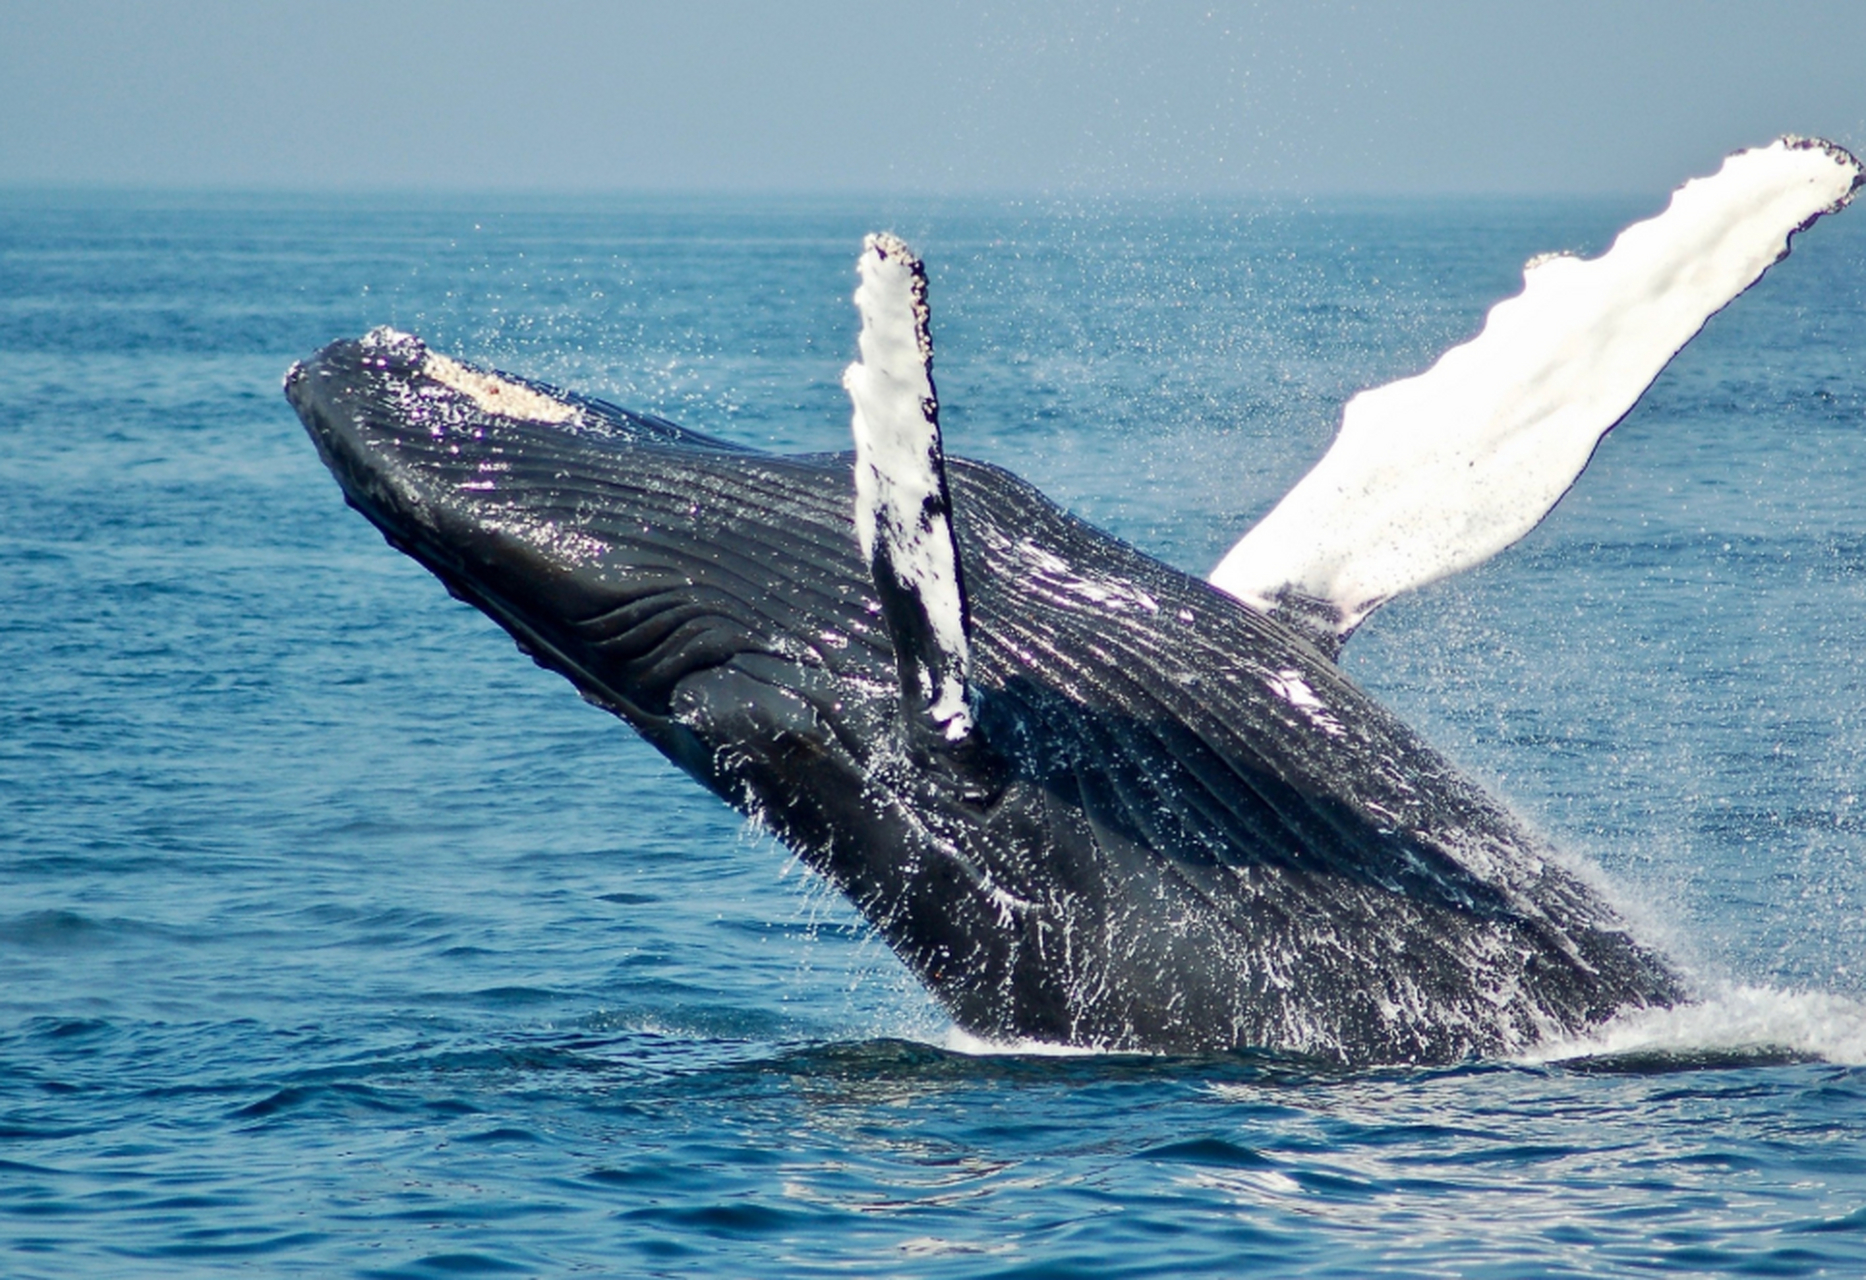 尽管须鲸的体型庞大,但是它们主要以小型鱼类,虾类和其它无脊椎动物